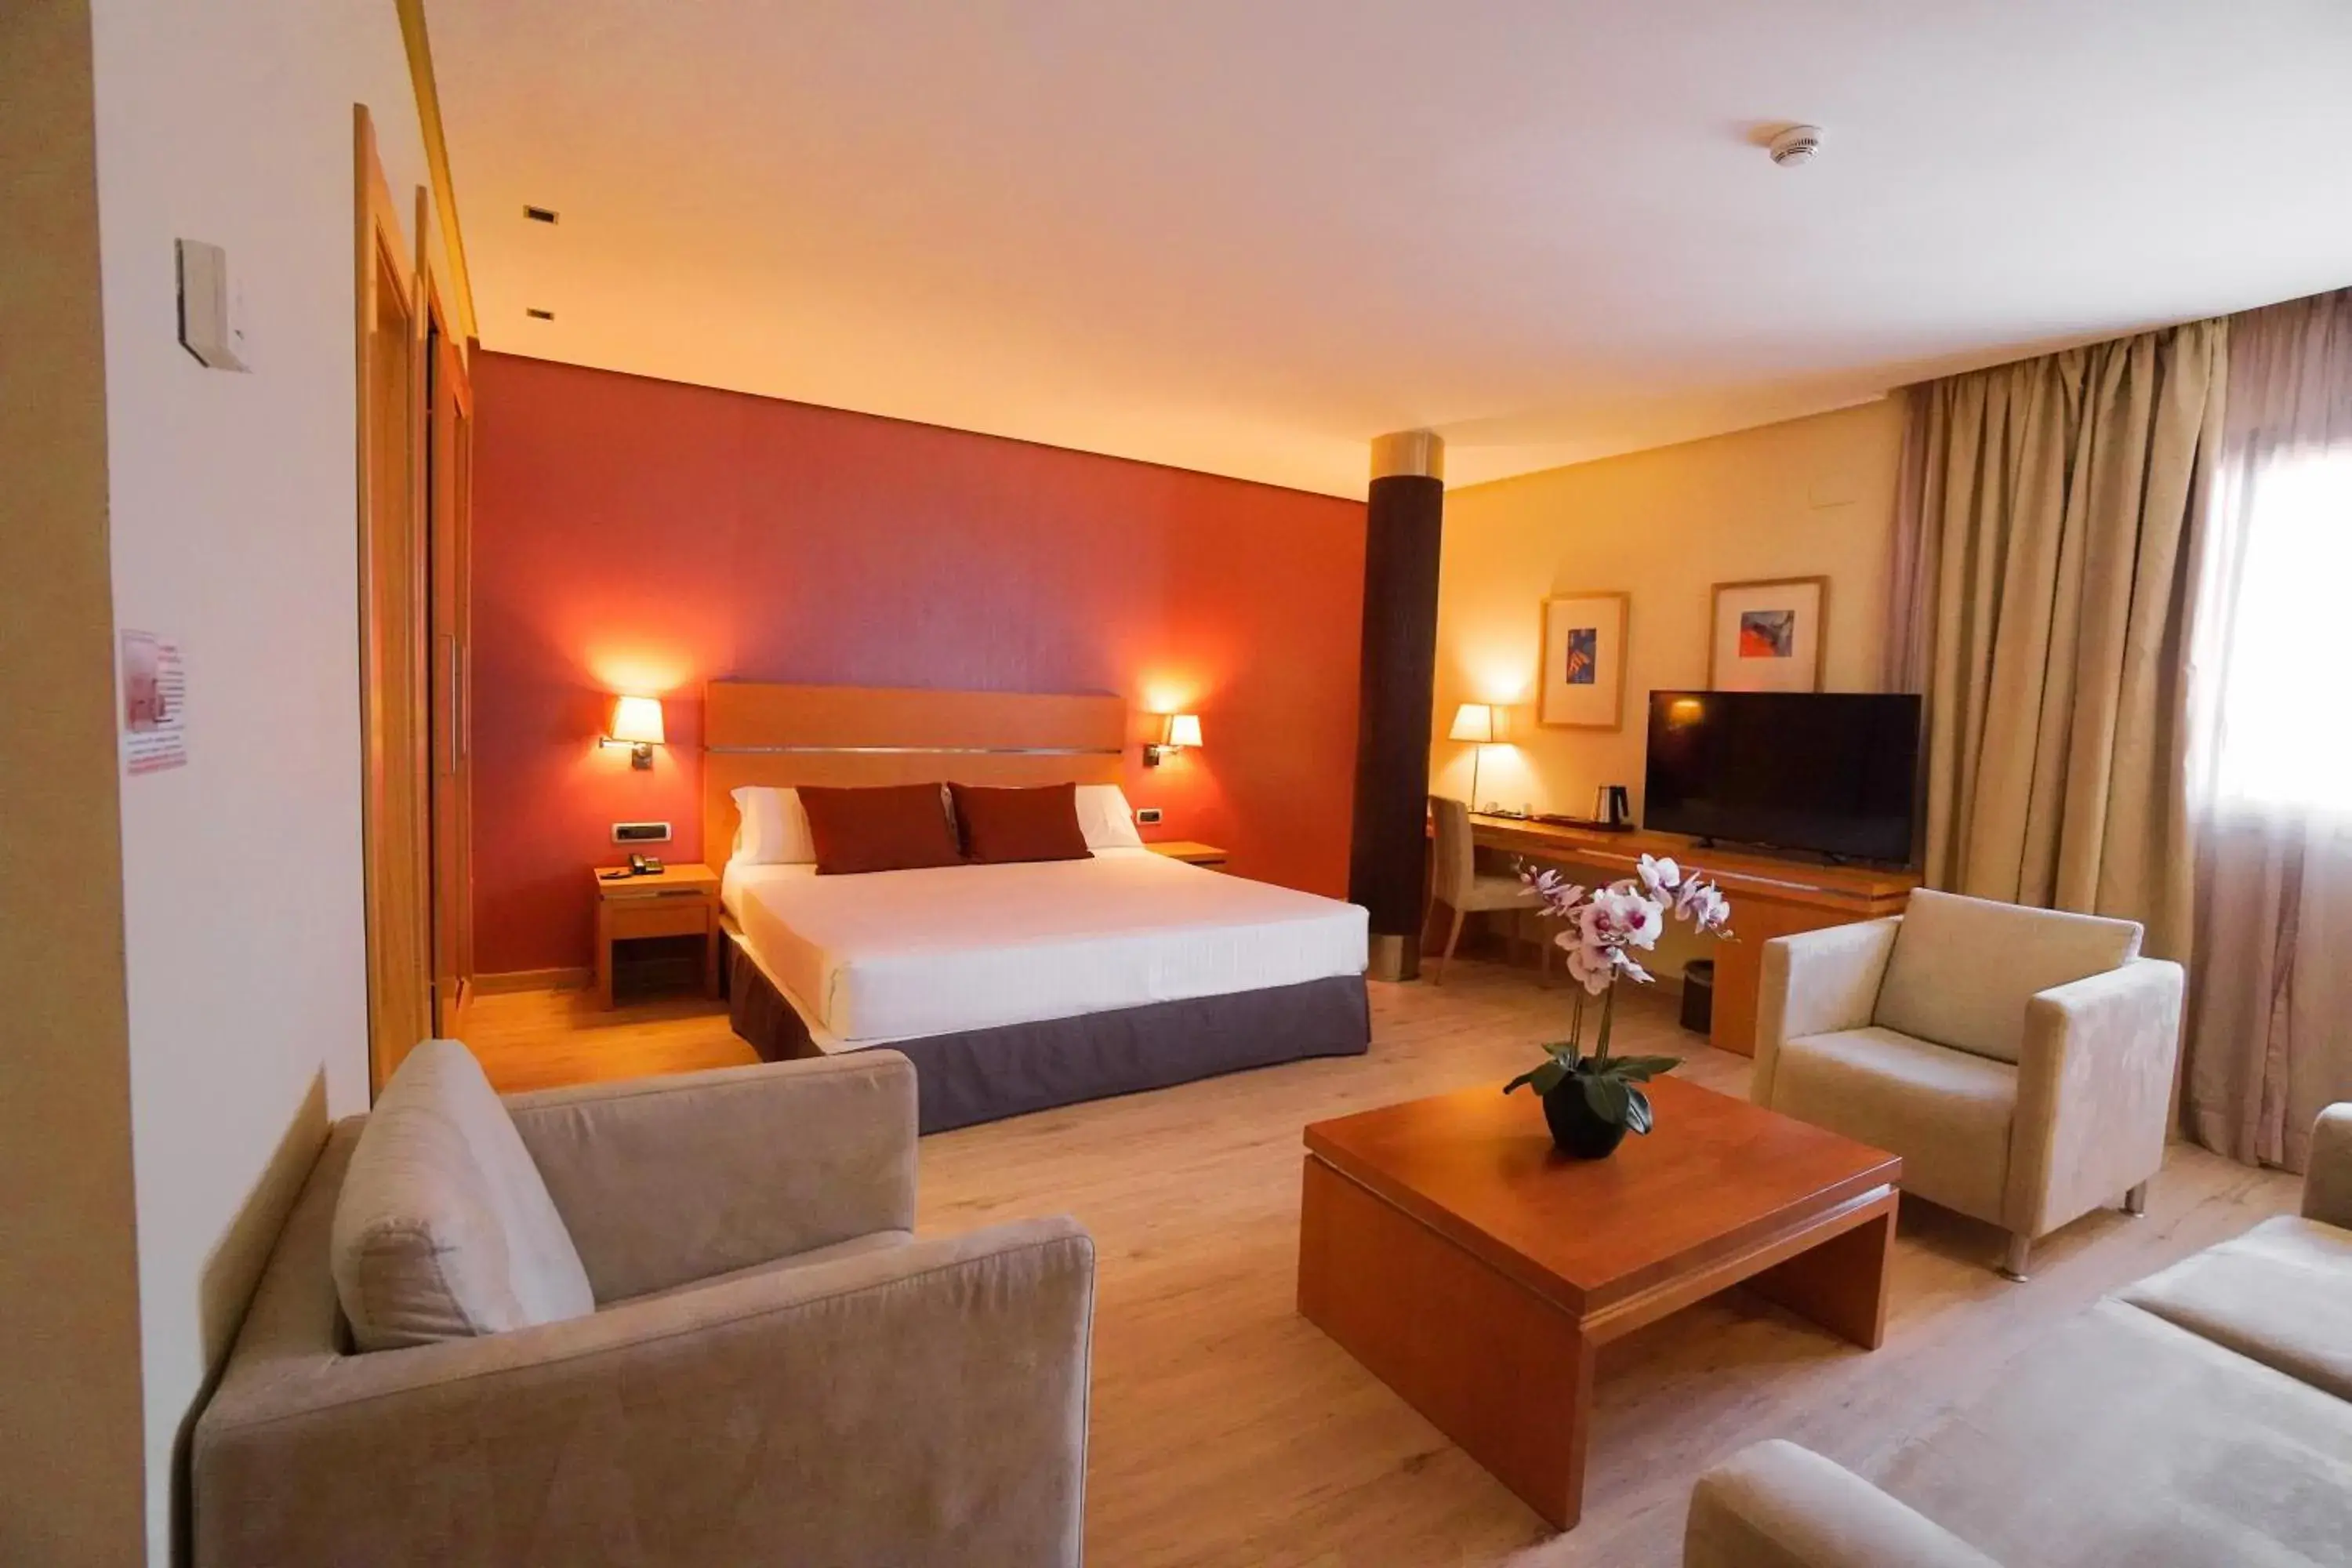 Bedroom in Hotel Reston Valdemoro